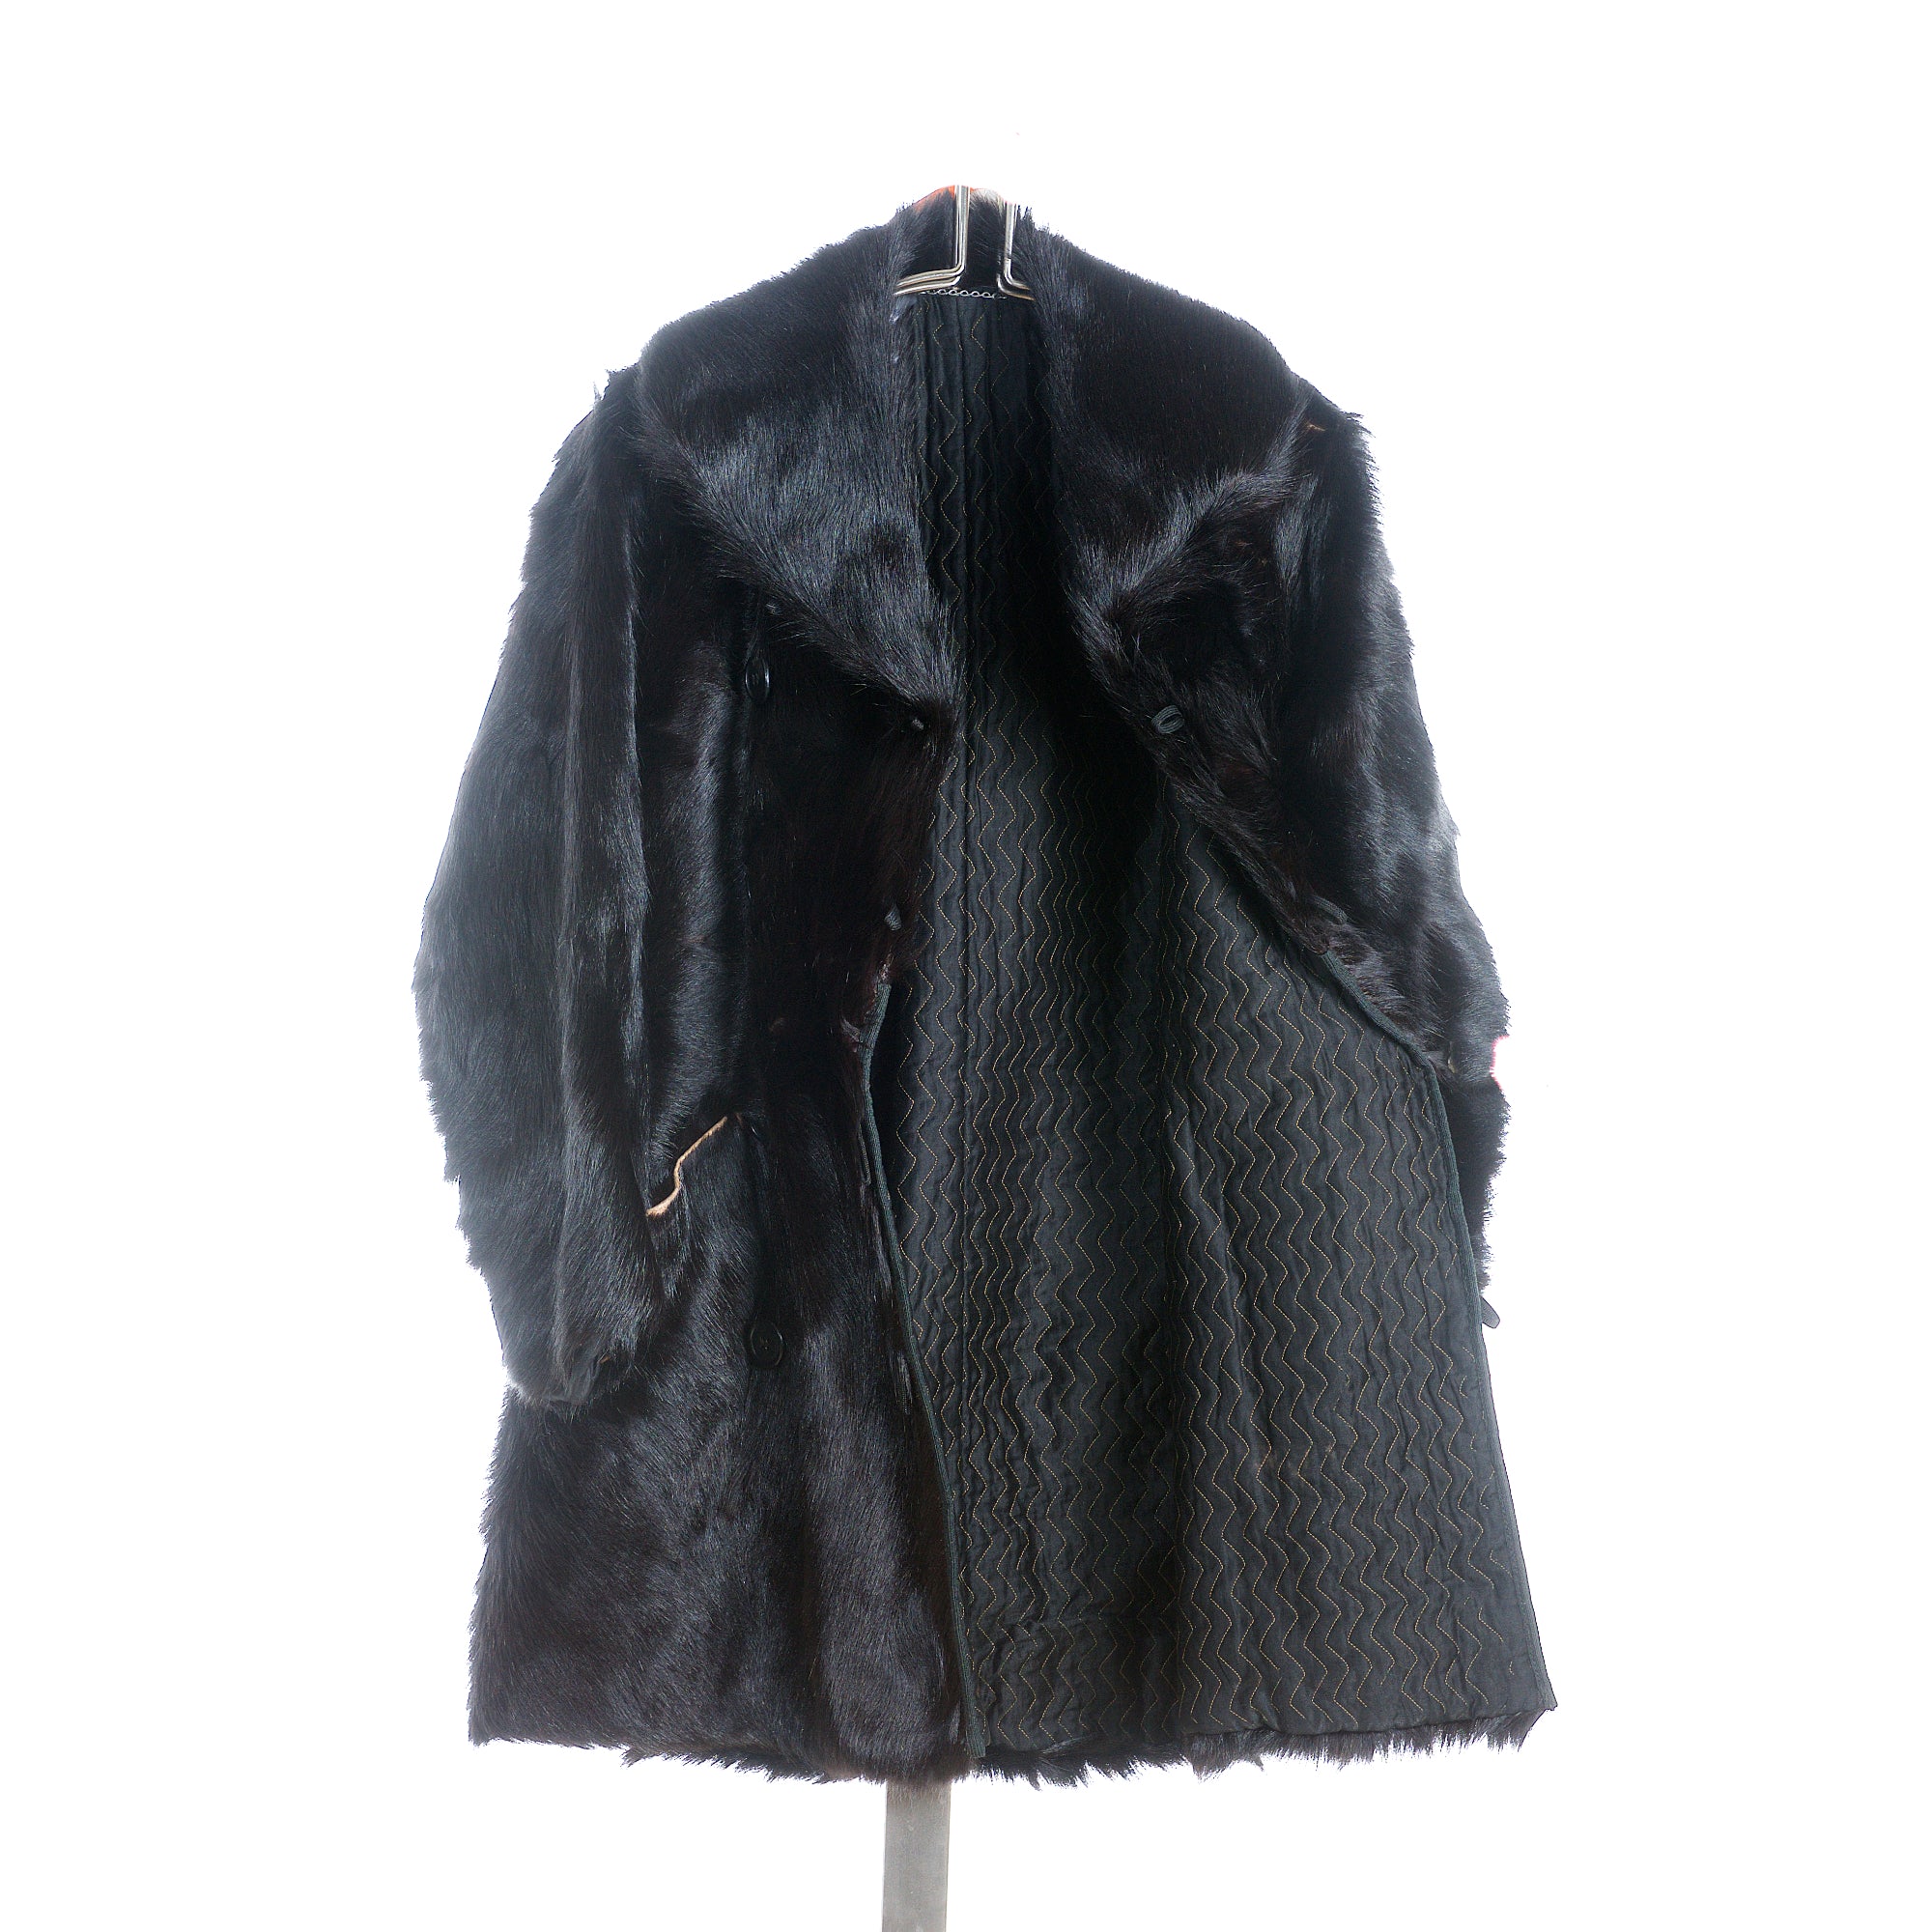 Black Bear Coat by Glover — The Buffalo Wool Co. - Herd Wear Retail Store